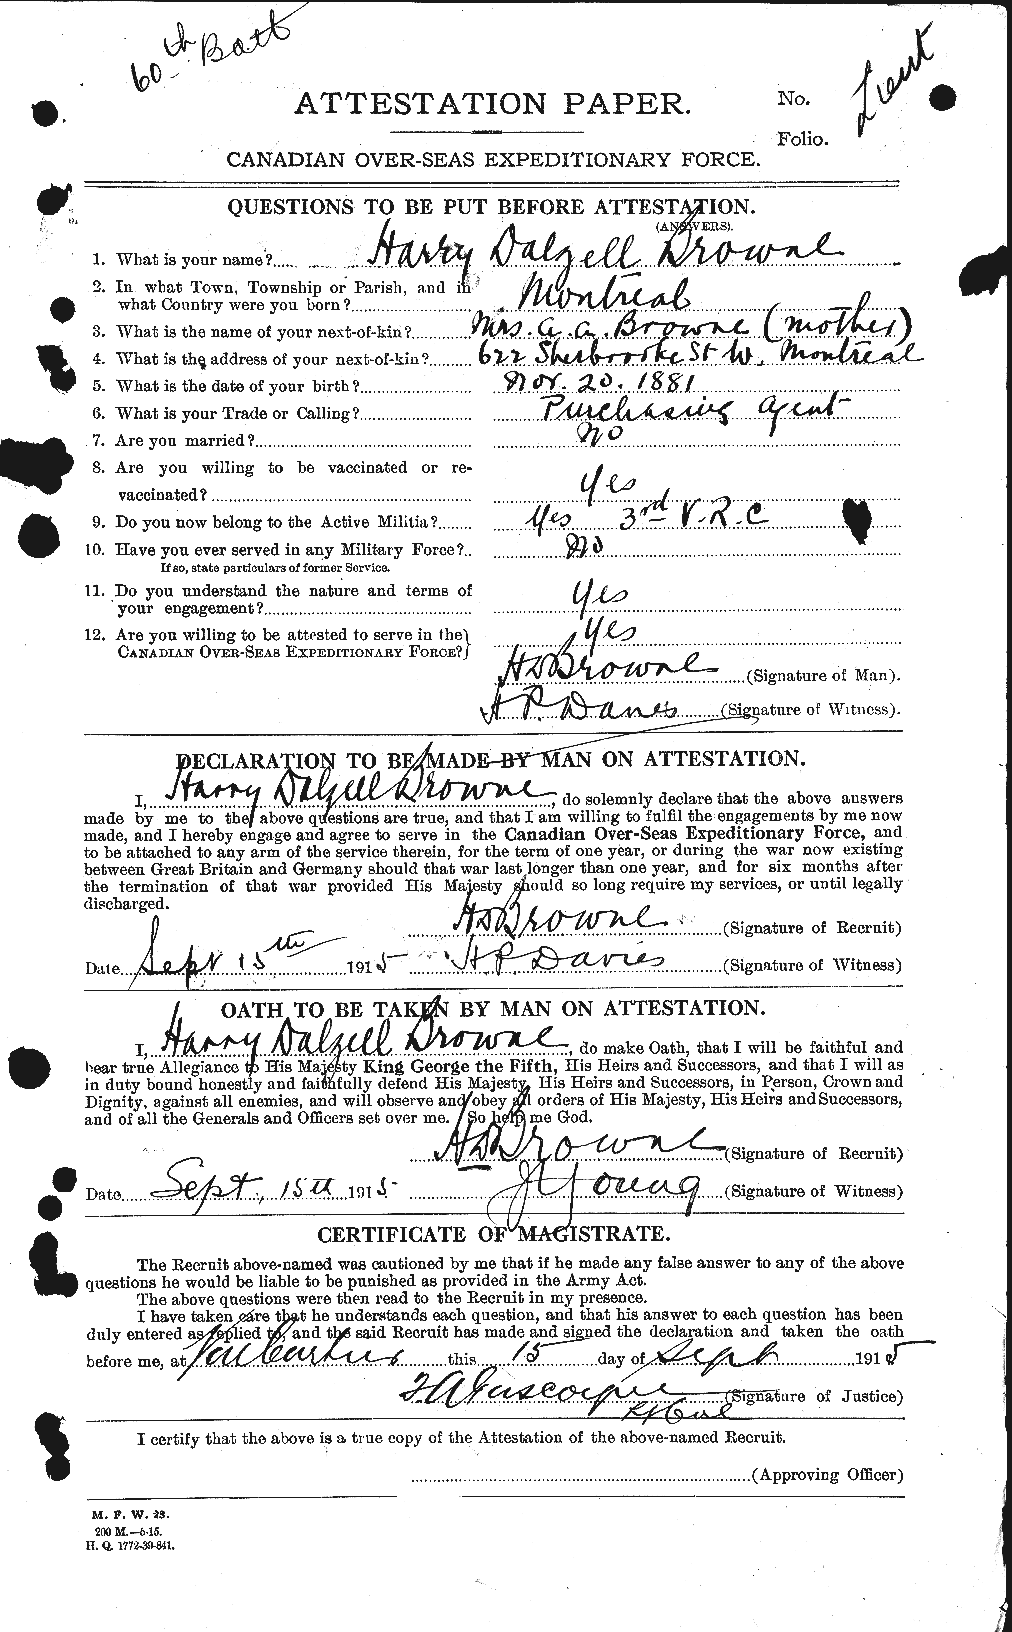 Dossiers du Personnel de la Première Guerre mondiale - CEC 267341a